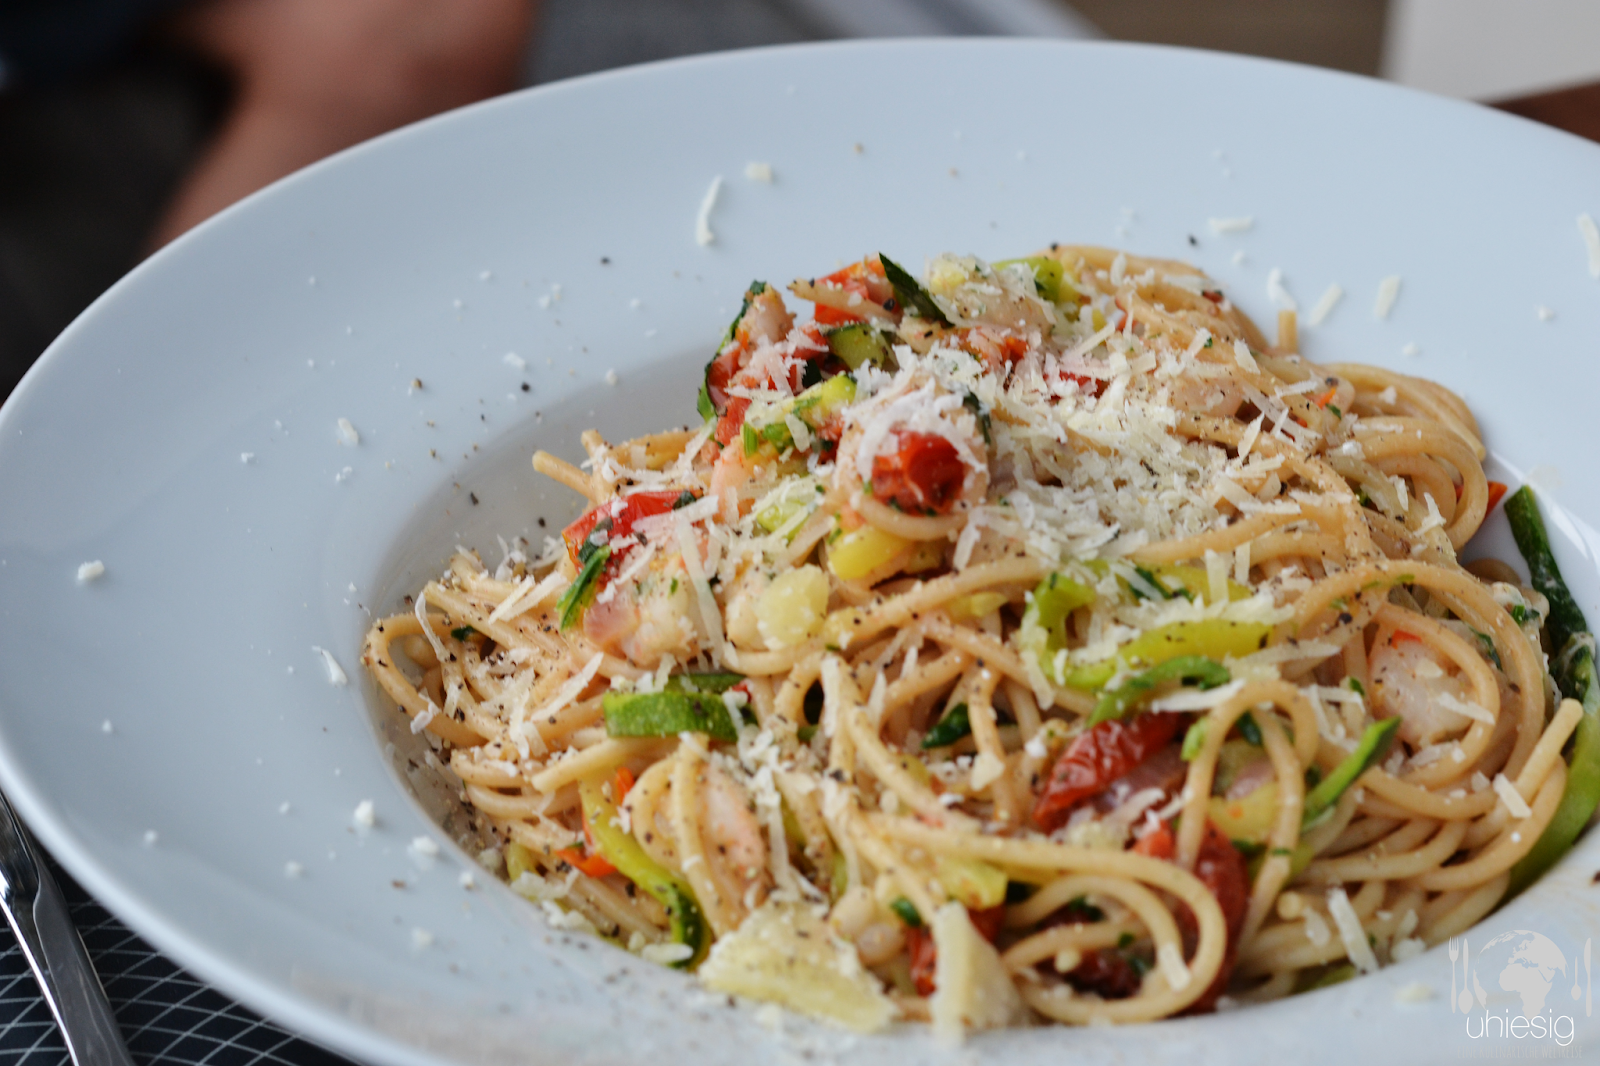 Uhiesig: Spaghetti mit Scampi und getrockneten Tomaten.